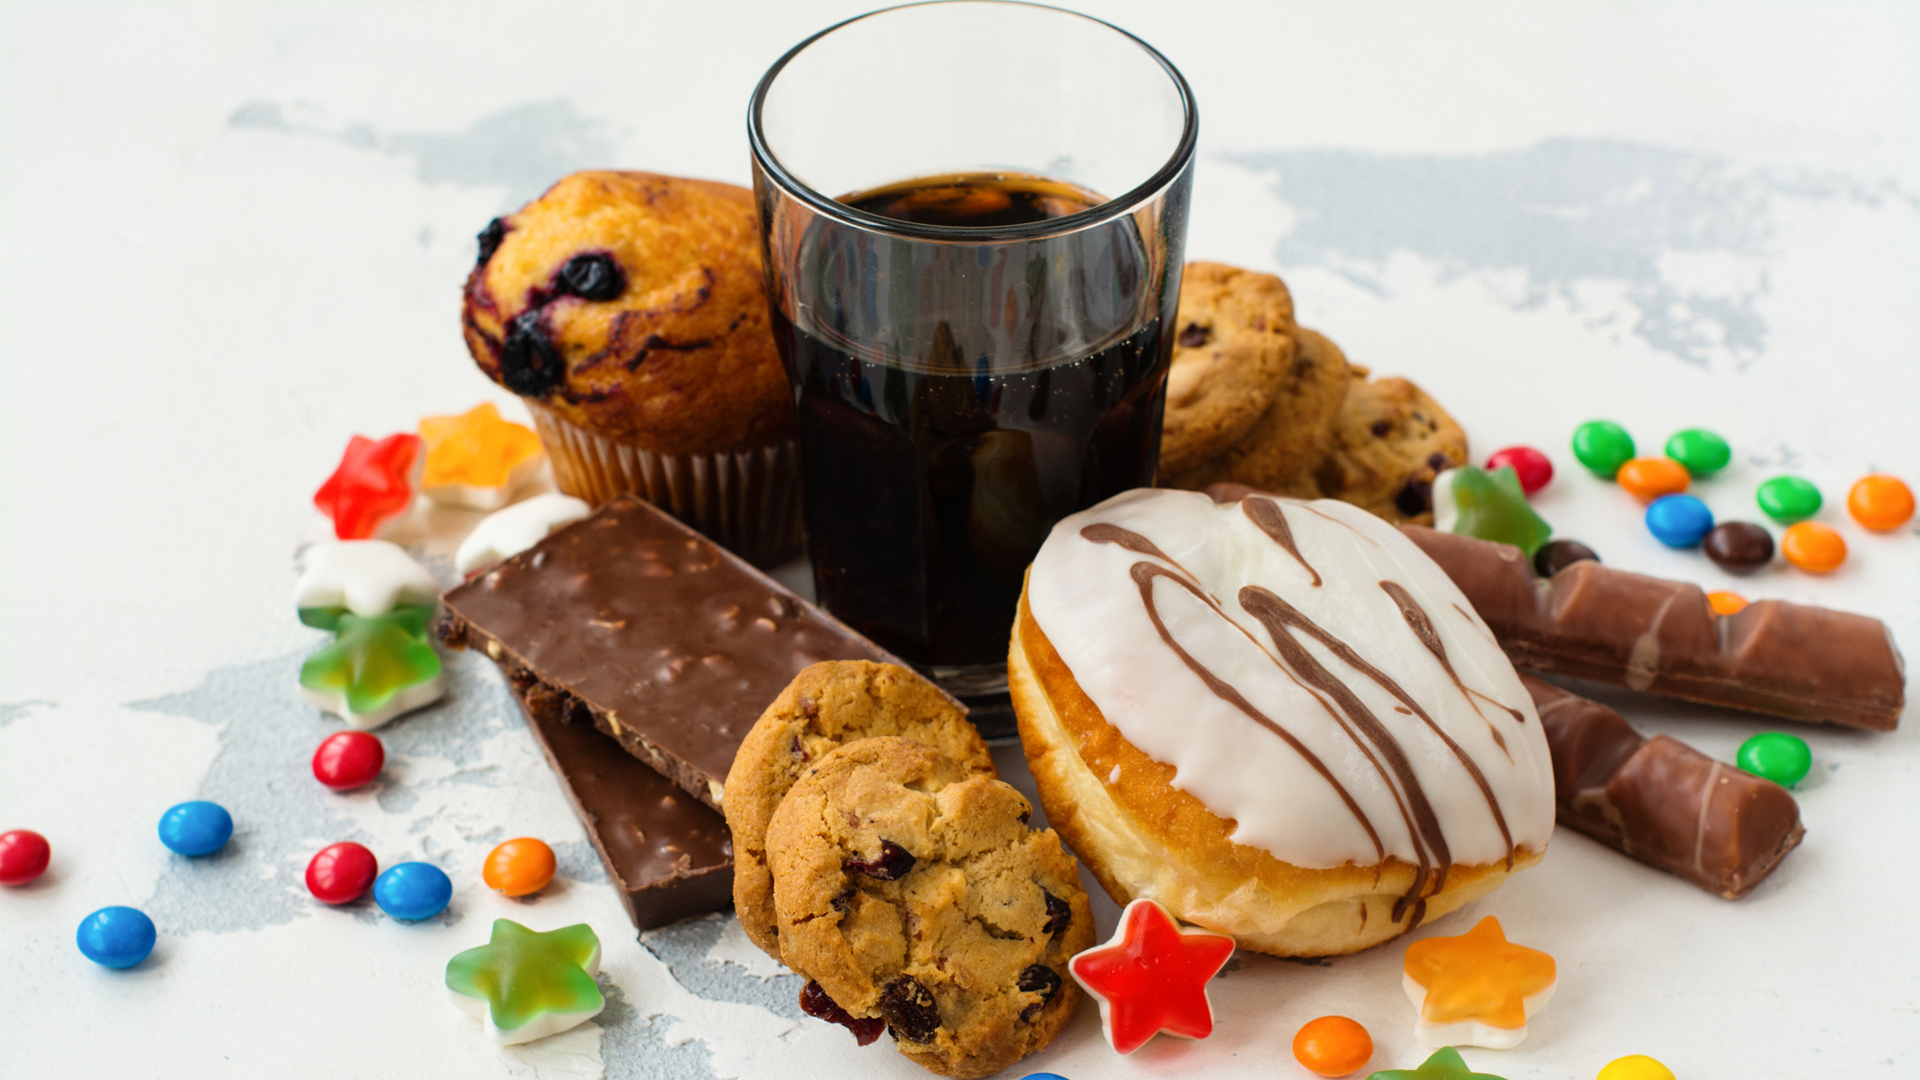 Das Bild zeigt verarbeitete Lebensmittel und einfache Kohlenhydrate, darunter Donuts, Soda, Kekse und Schokolade